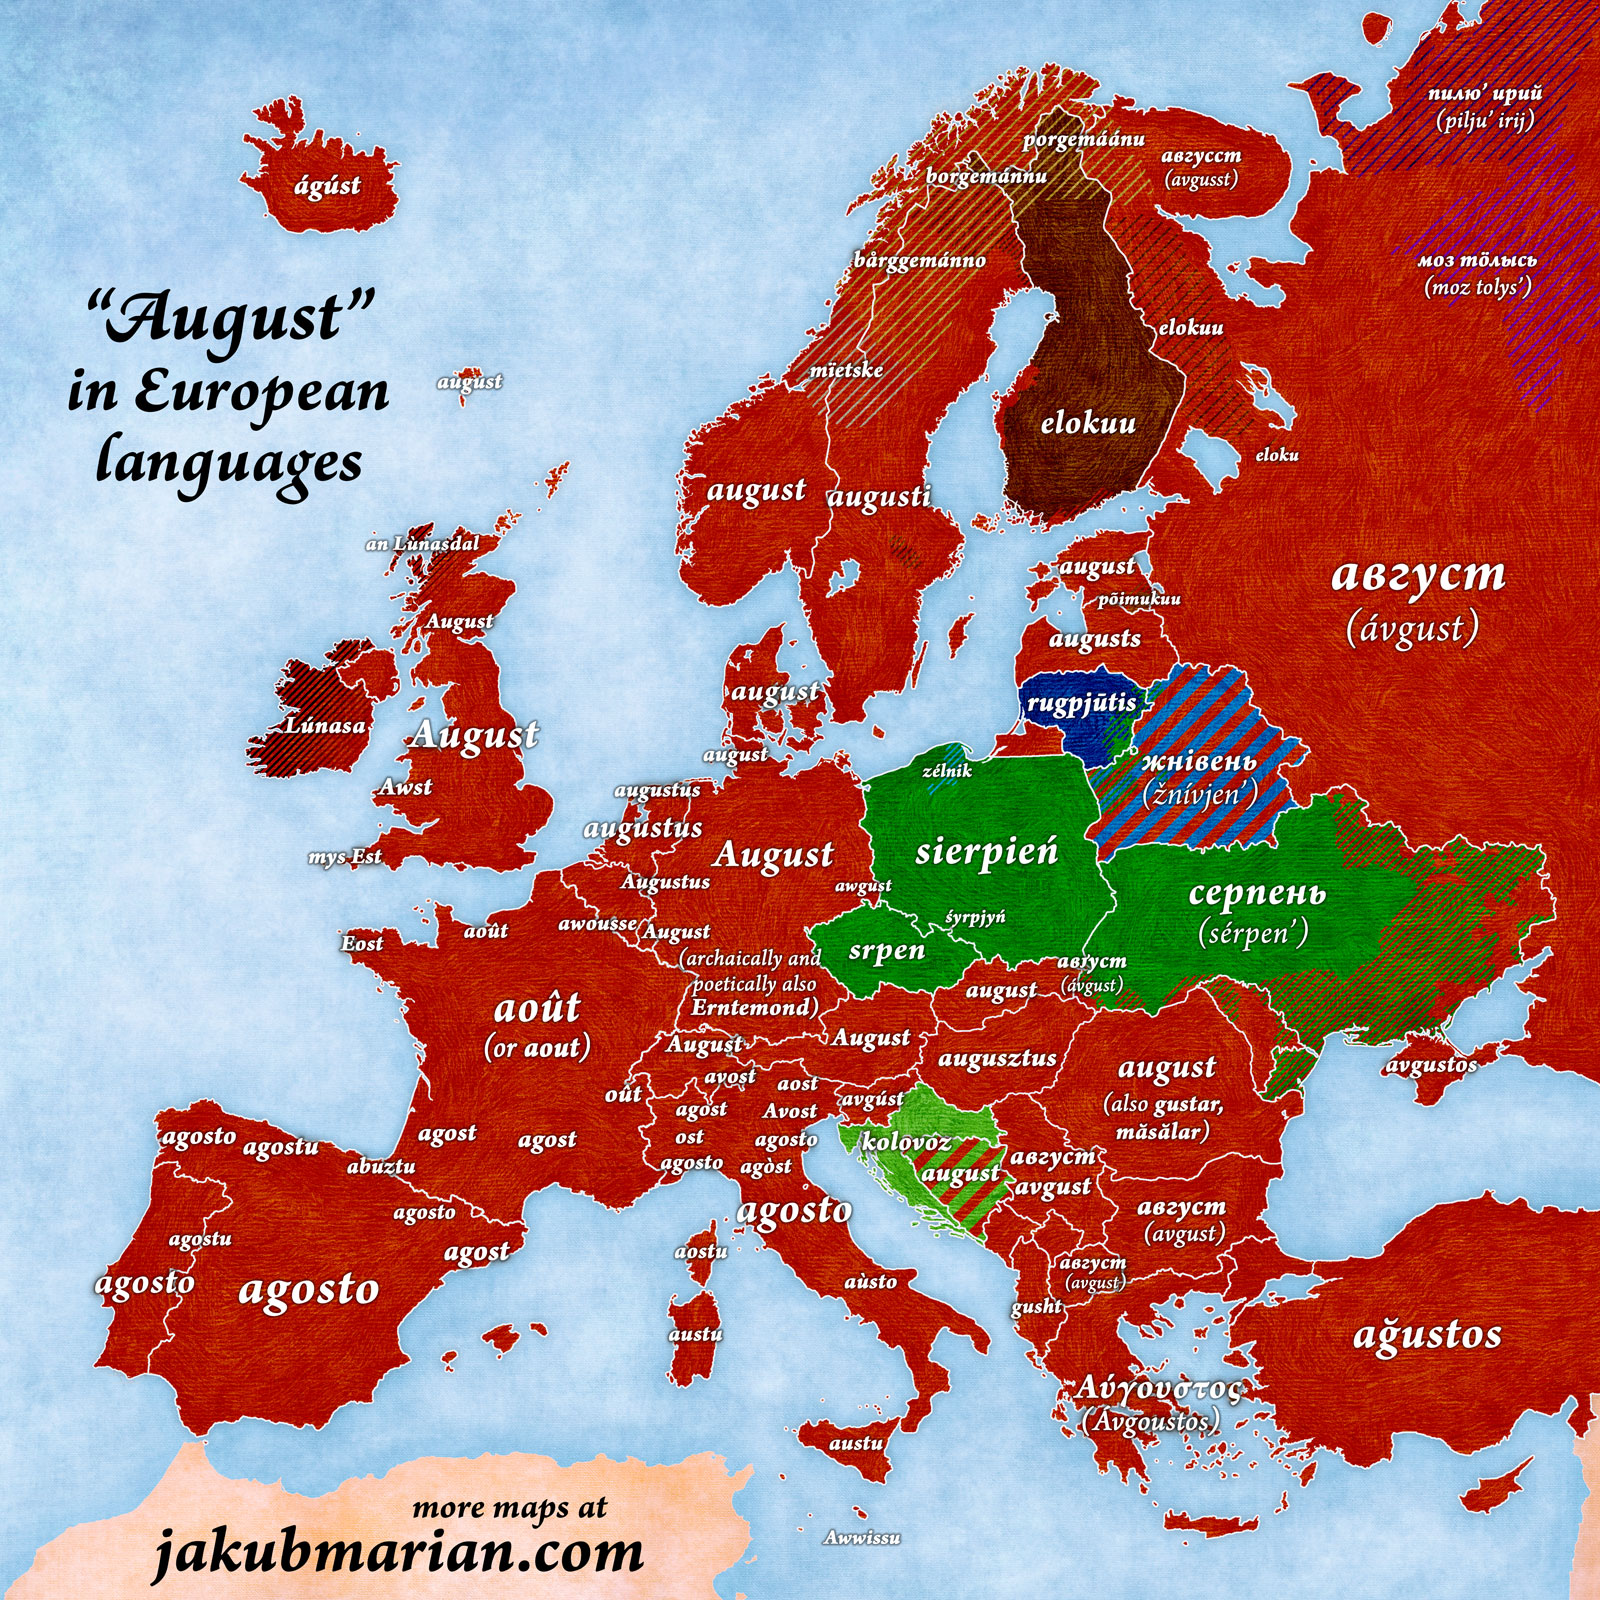 August in European languages